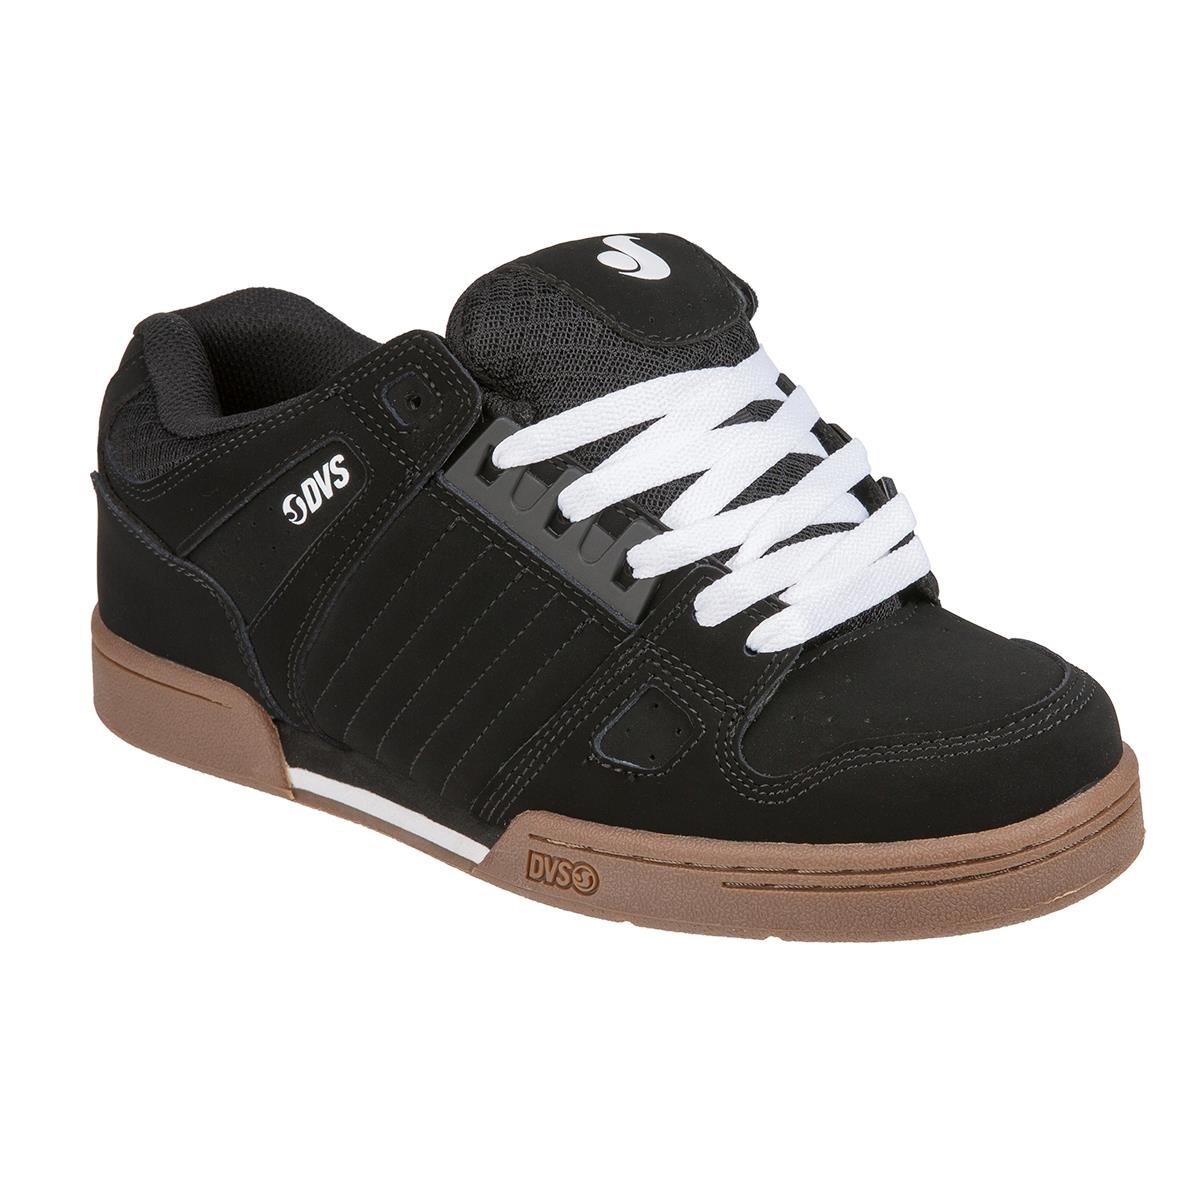 DVS Shoes Celsius Anderson - Black/White Gum/Nubuck